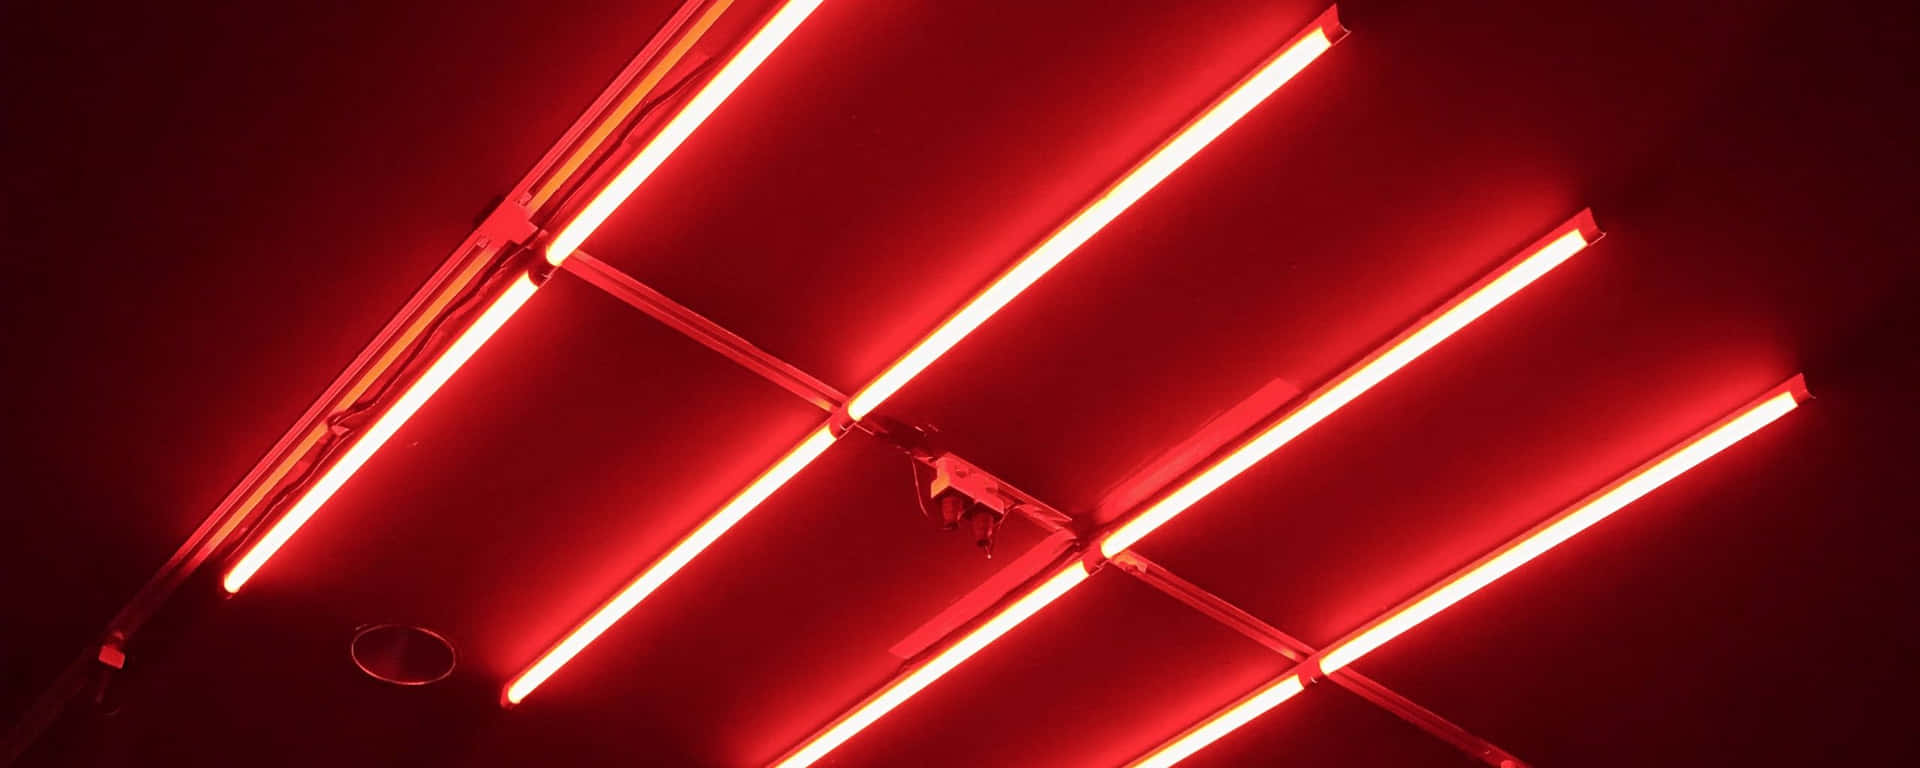 Fluorescent Light Red Ultra Wide HD Wallpaper